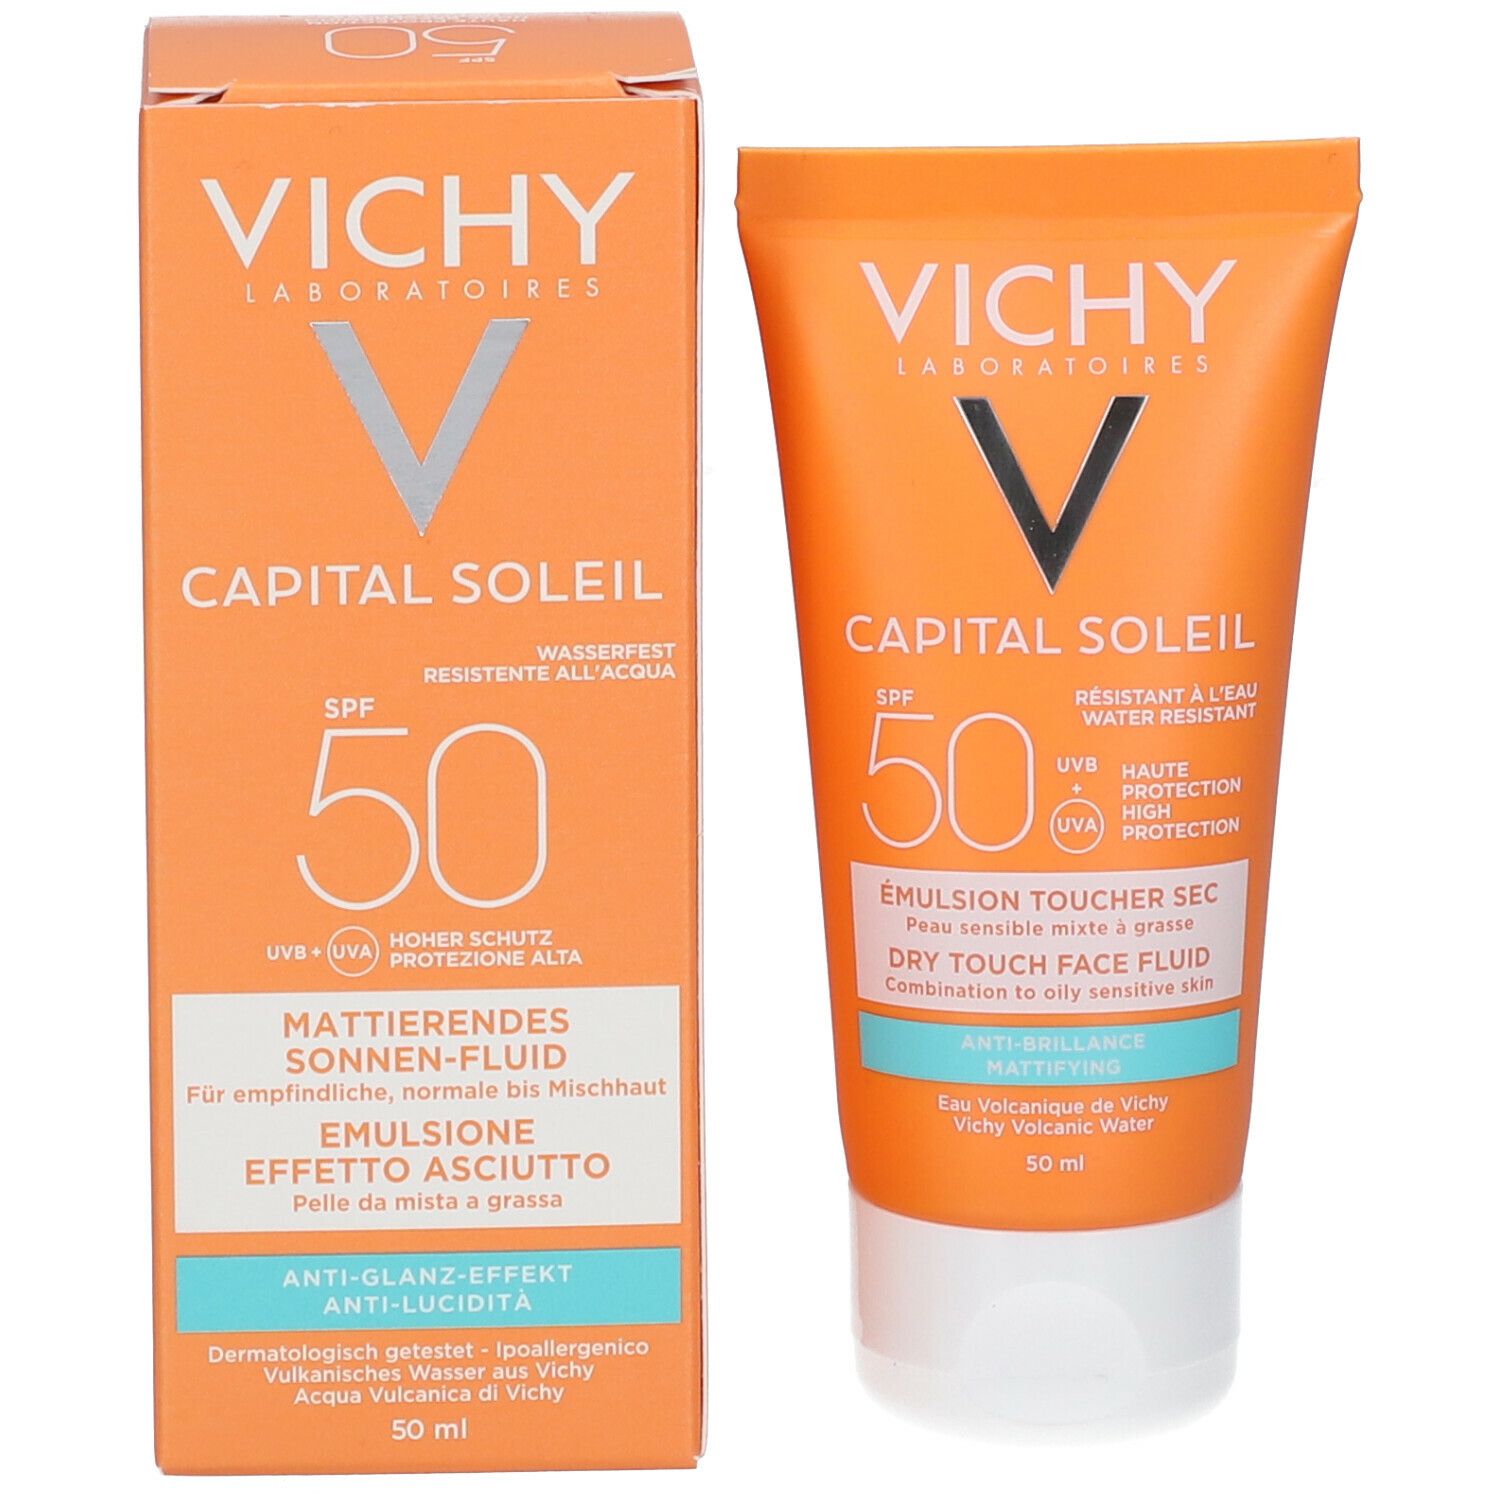 Vichy Capital Soleil Emulsione anti-lucidità effetto asciutto SPF50 50 ml